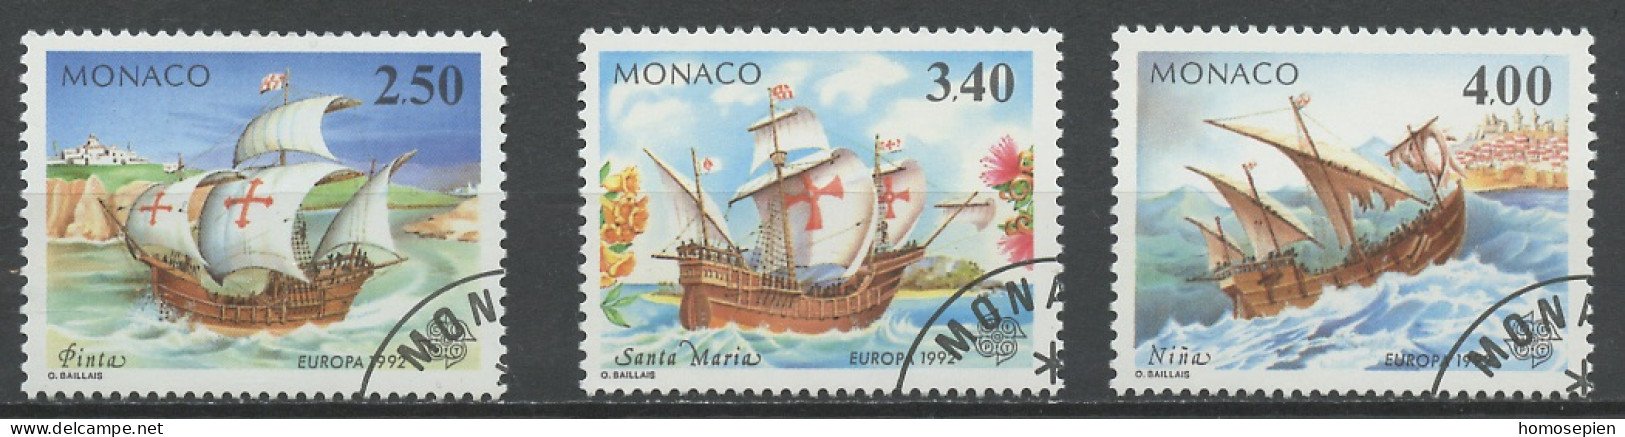 Monaco 1992 Y&T N°1825 à 1827 - Michel N°2070 à 2072 (o) - EUROPA - Gebraucht